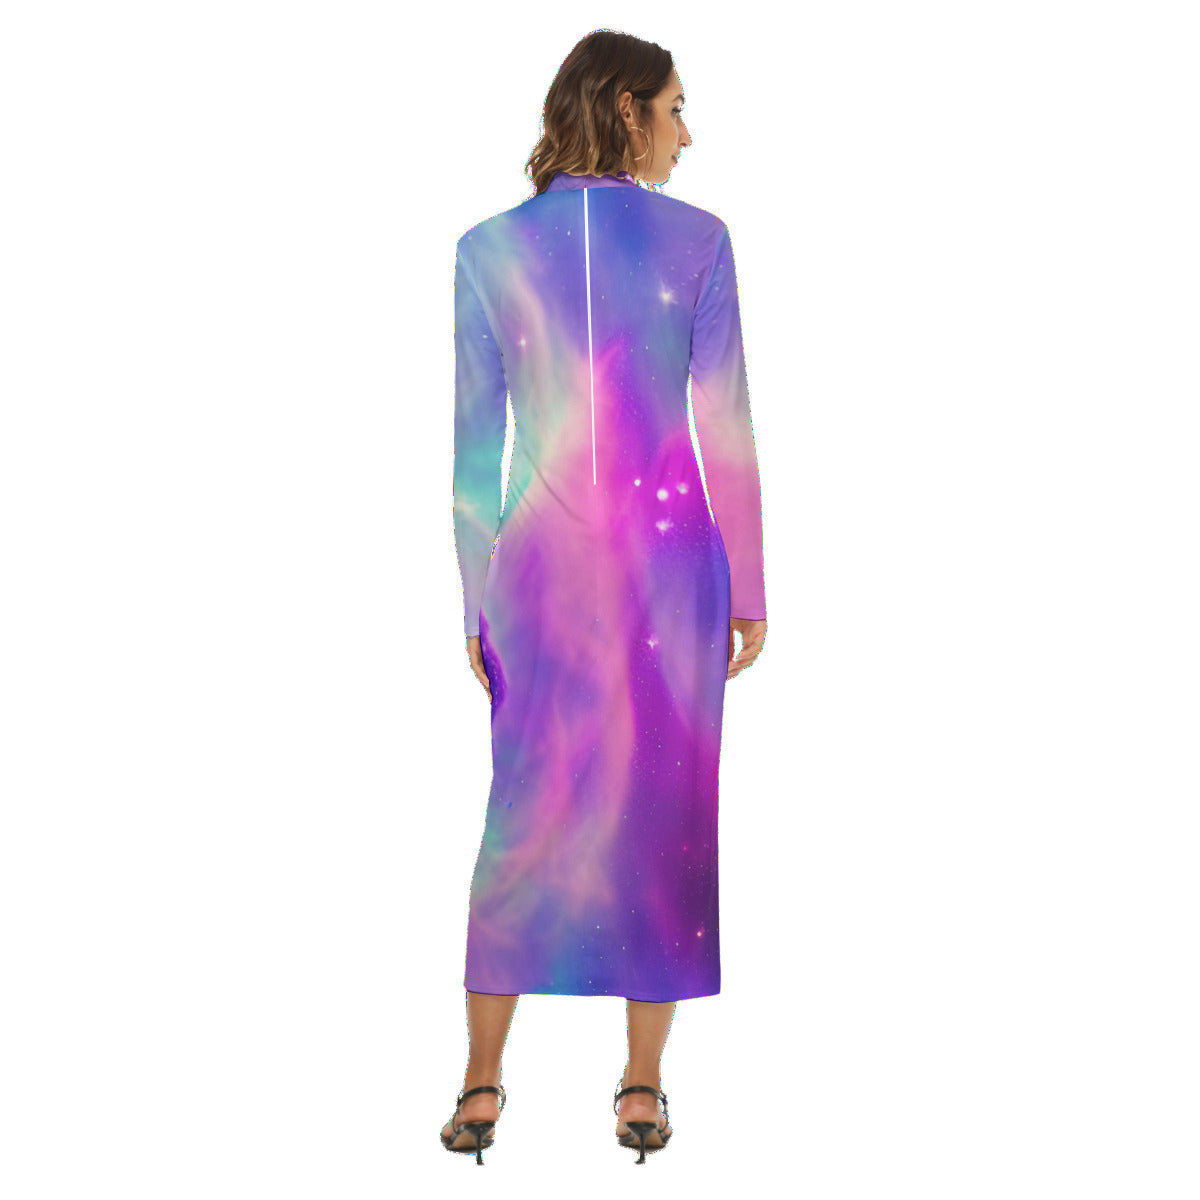 Vibrant Iridescent Cosmic Nebula Women's Fashion Hip Dress - The Nebula Palace